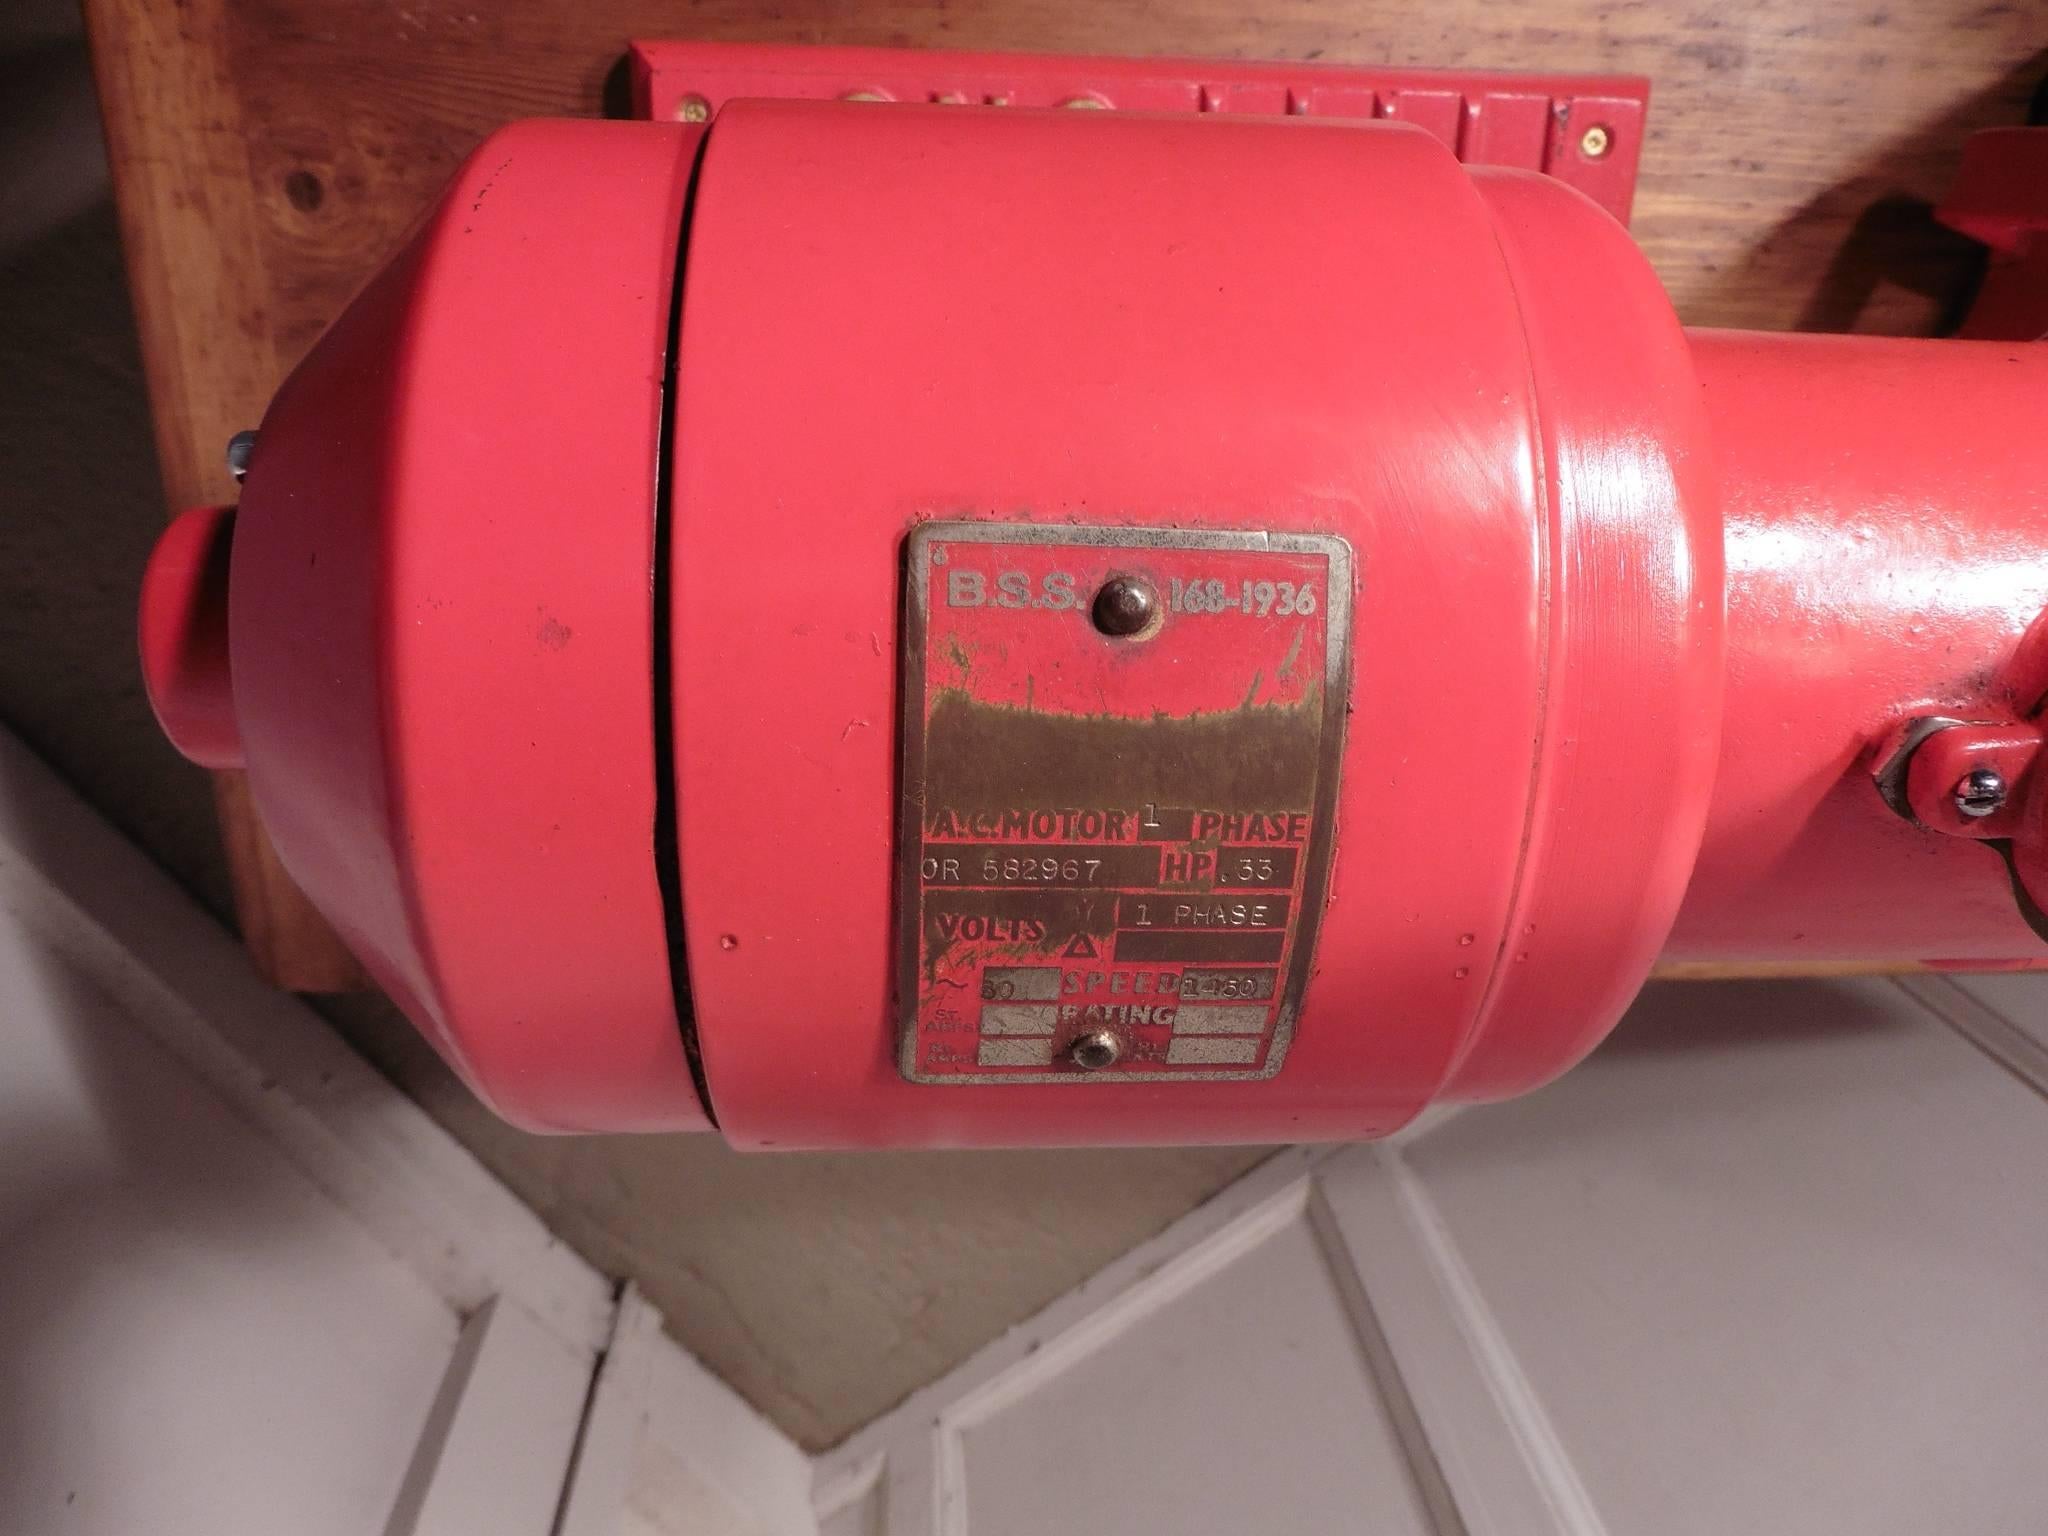 industrial coffee grinder